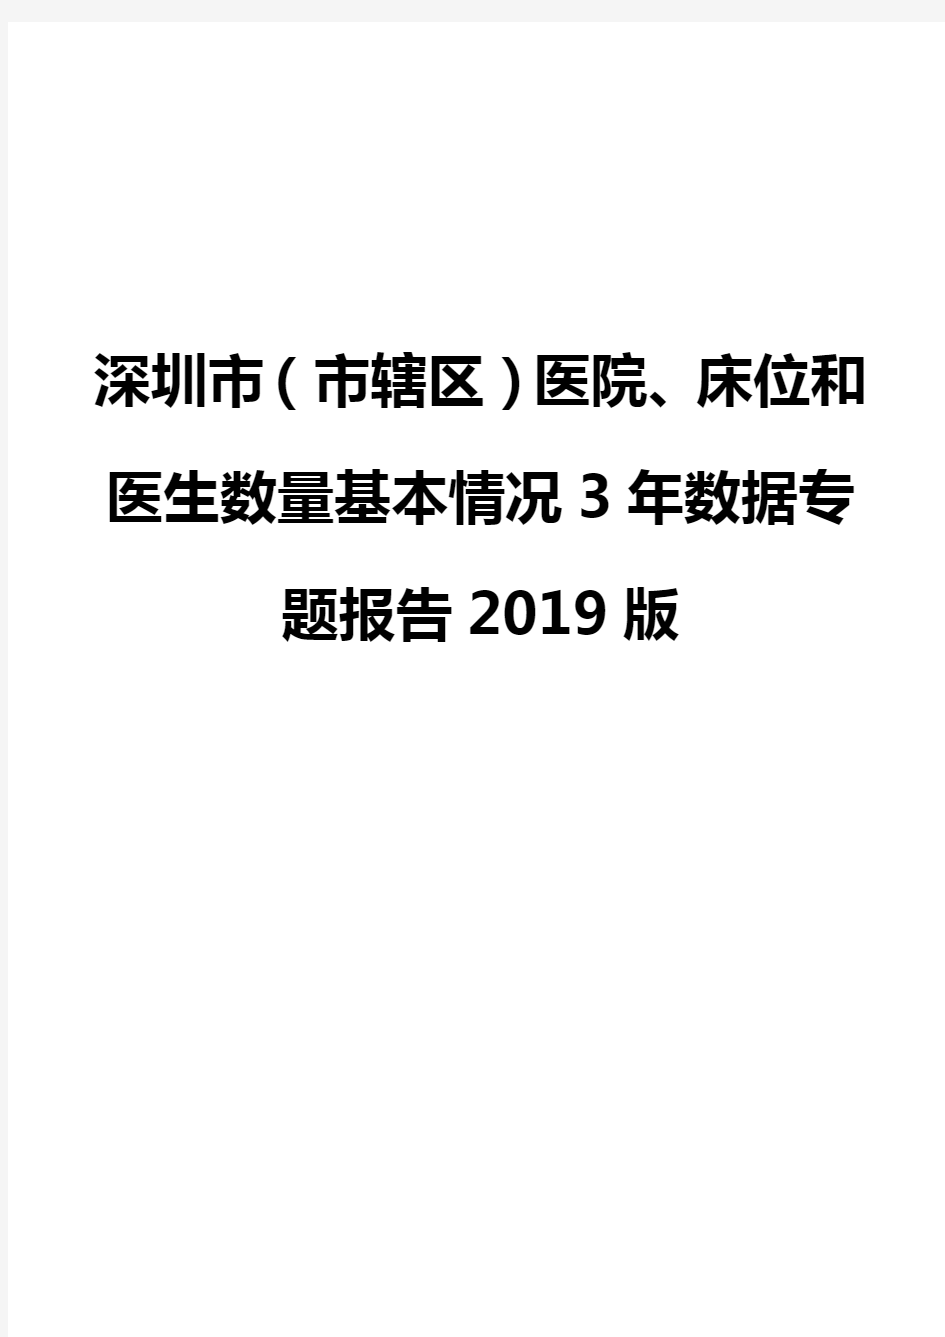 深圳市(市辖区)医院、床位和医生数量基本情况3年数据专题报告2019版